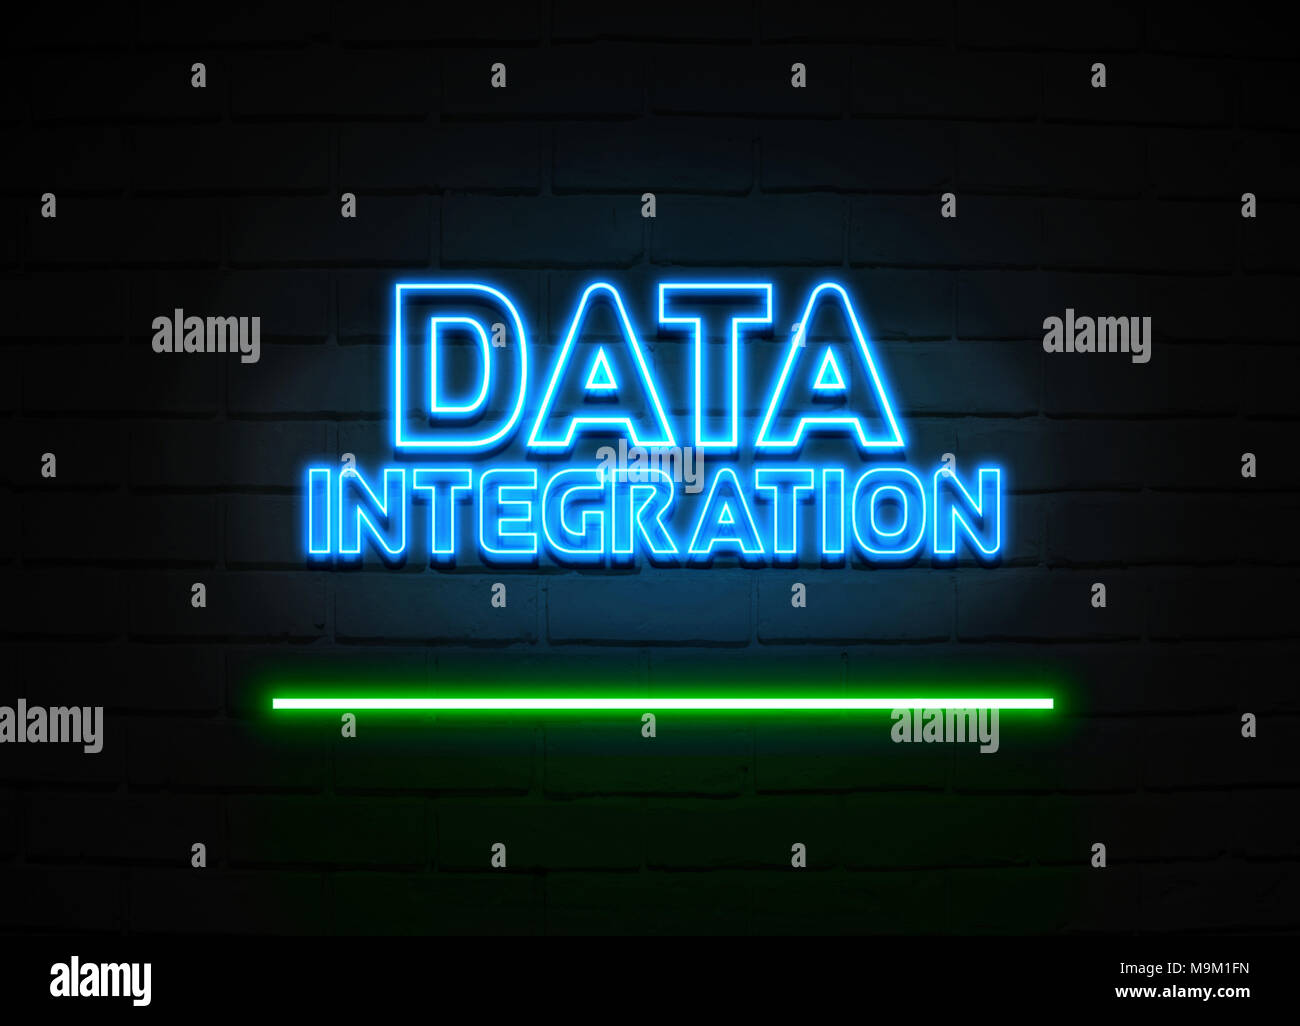 Data Integration Leuchtreklame - glühende Leuchtreklame auf brickwall Wand - 3D-Royalty Free Stock Illustration dargestellt. Stockfoto